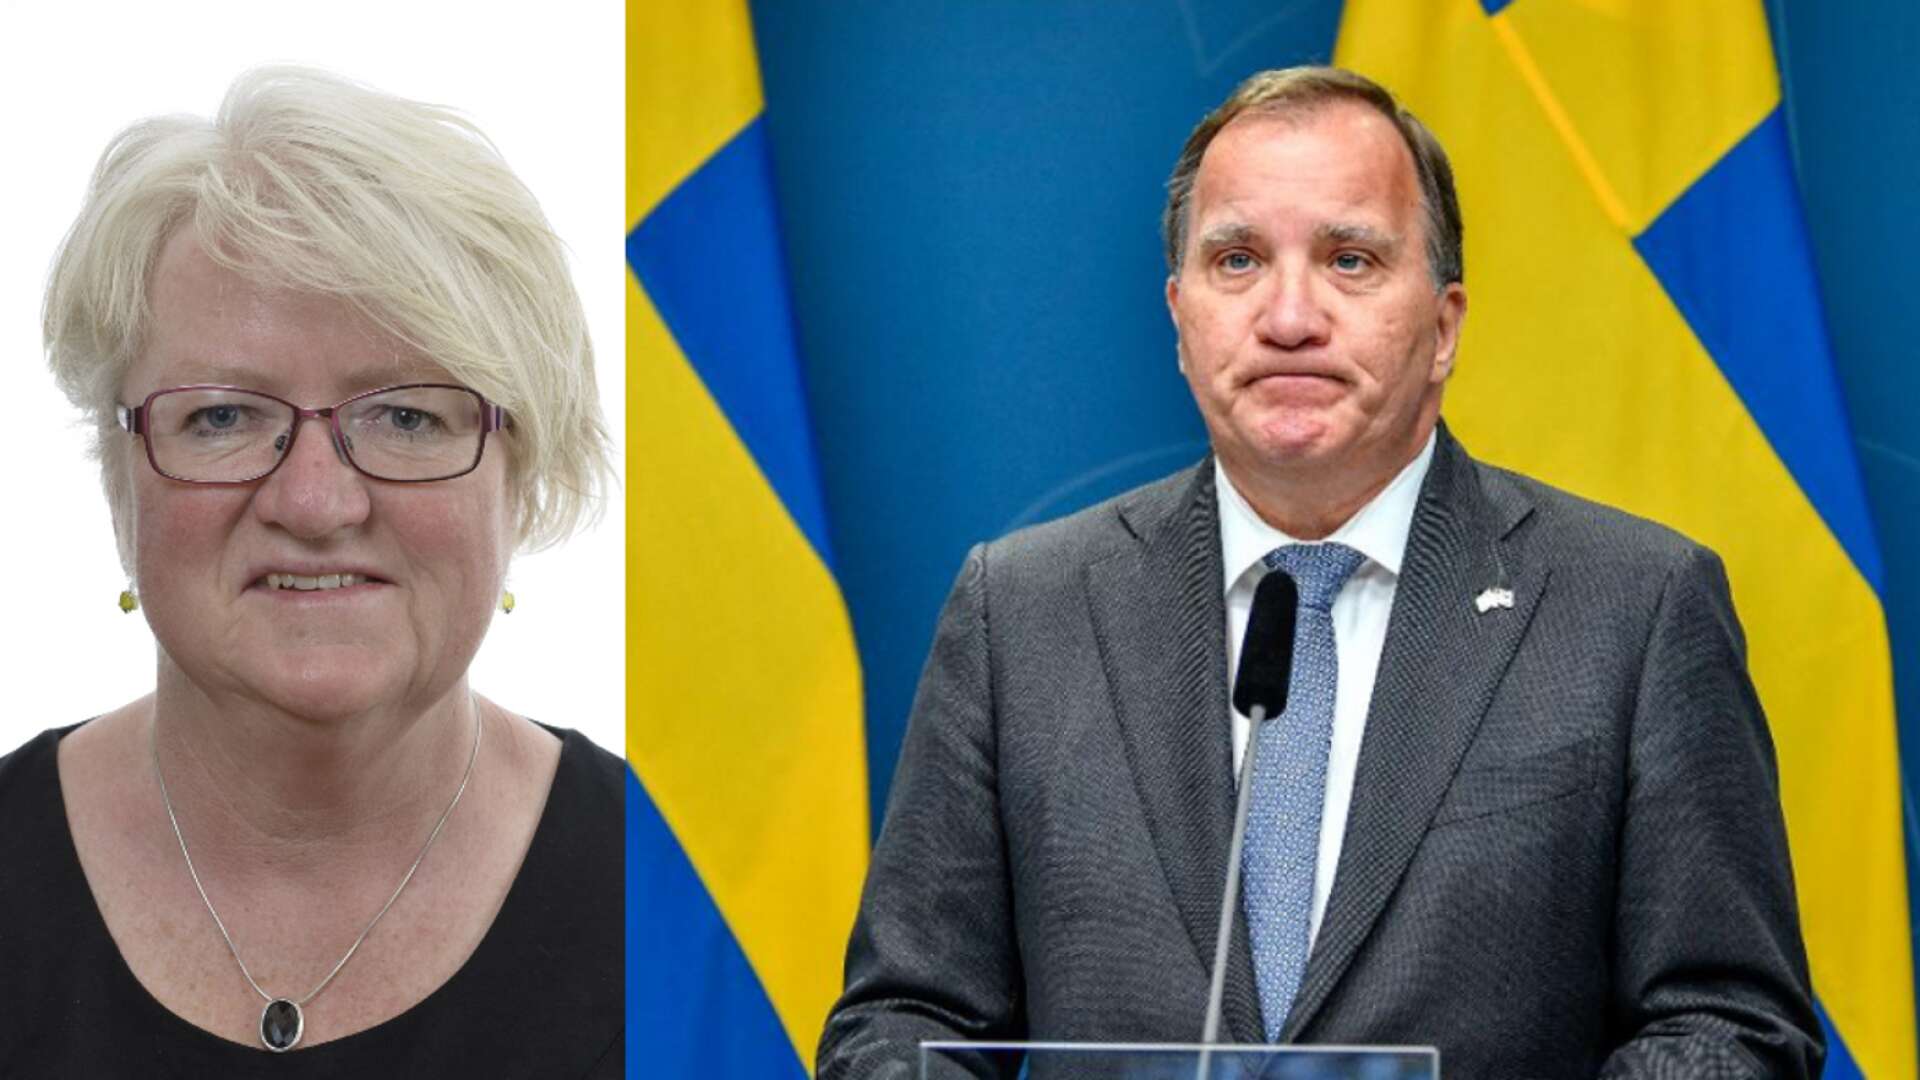 På söndagen meddelade statsminister Stefan Löfven att han avgår i samband med partikongressen i november. Beskedet var oväntat, men Lidköpingsbon Carina Ohlsson, riksdagsledamot och ordförande för S-kvinnorna, kan förstå beslutet.